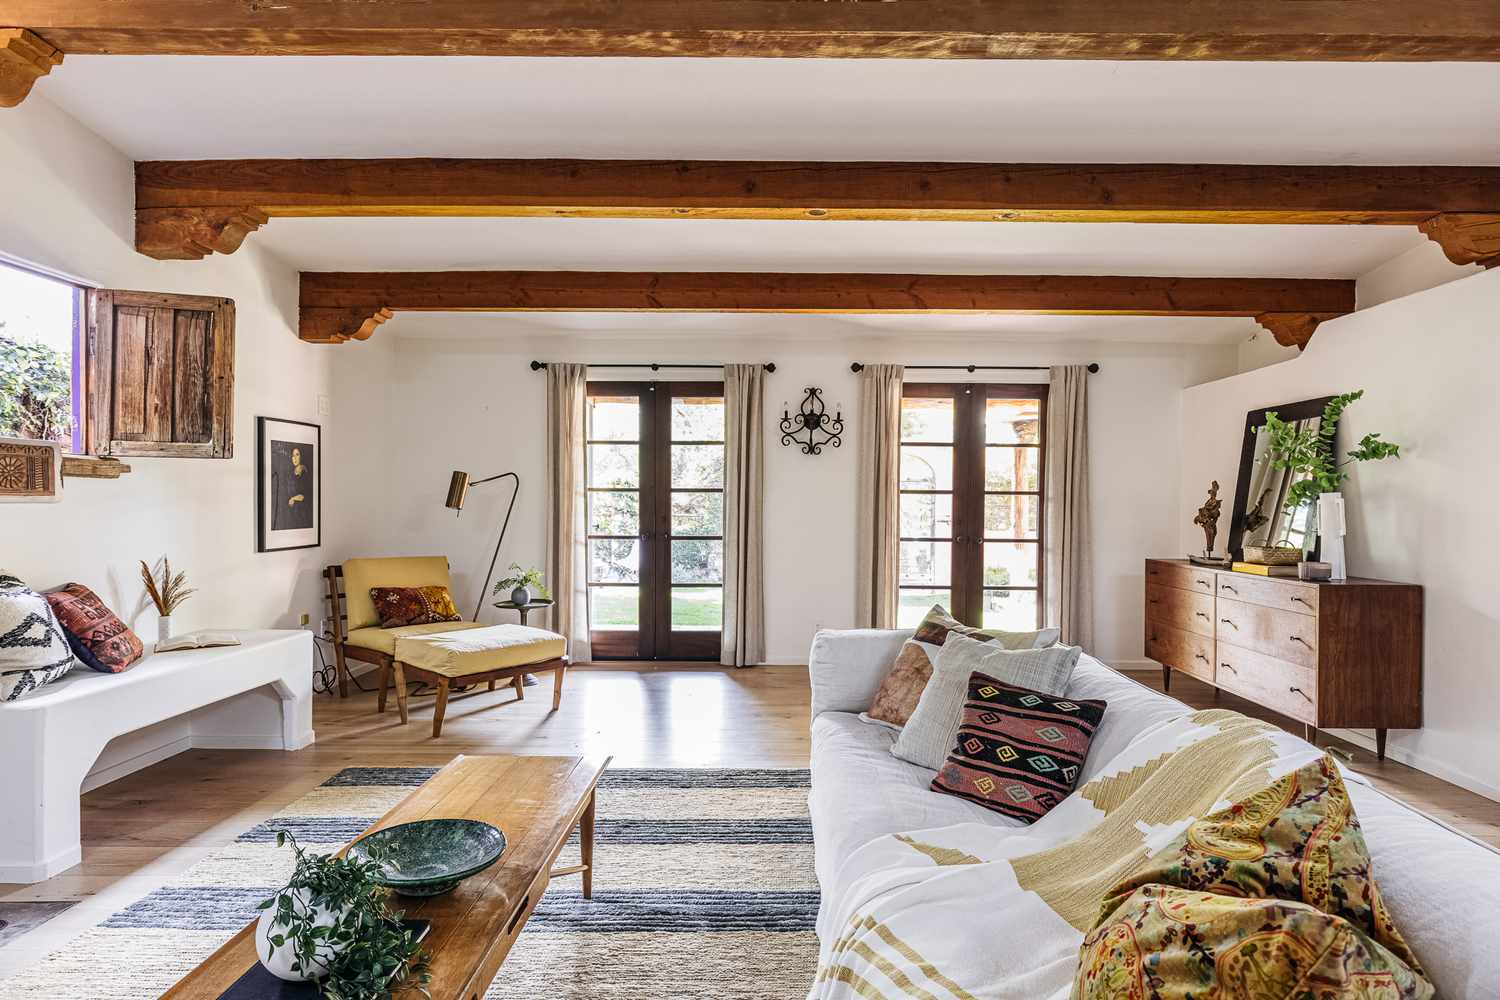 Sala de estar em estilo mediterrâneo com móveis de madeira, paredes brancas e almofadas estampadas